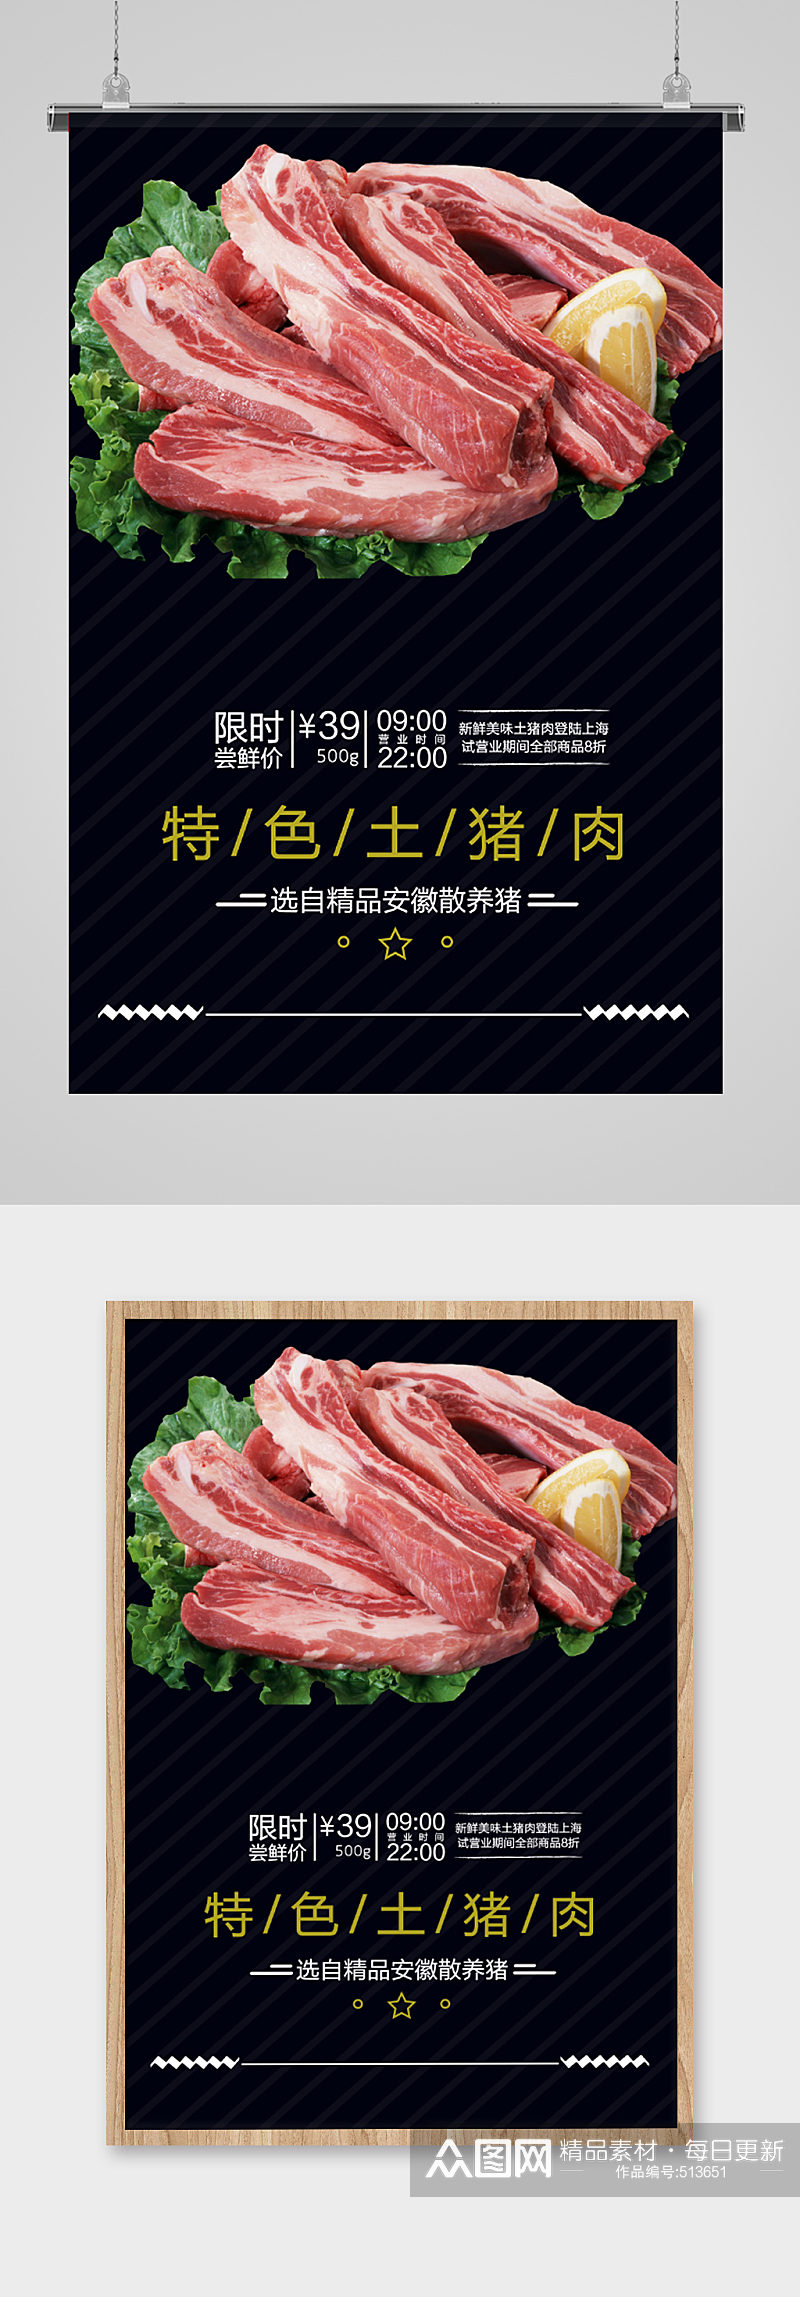 特色土猪肉食品海报食品类海报宣传单页素材